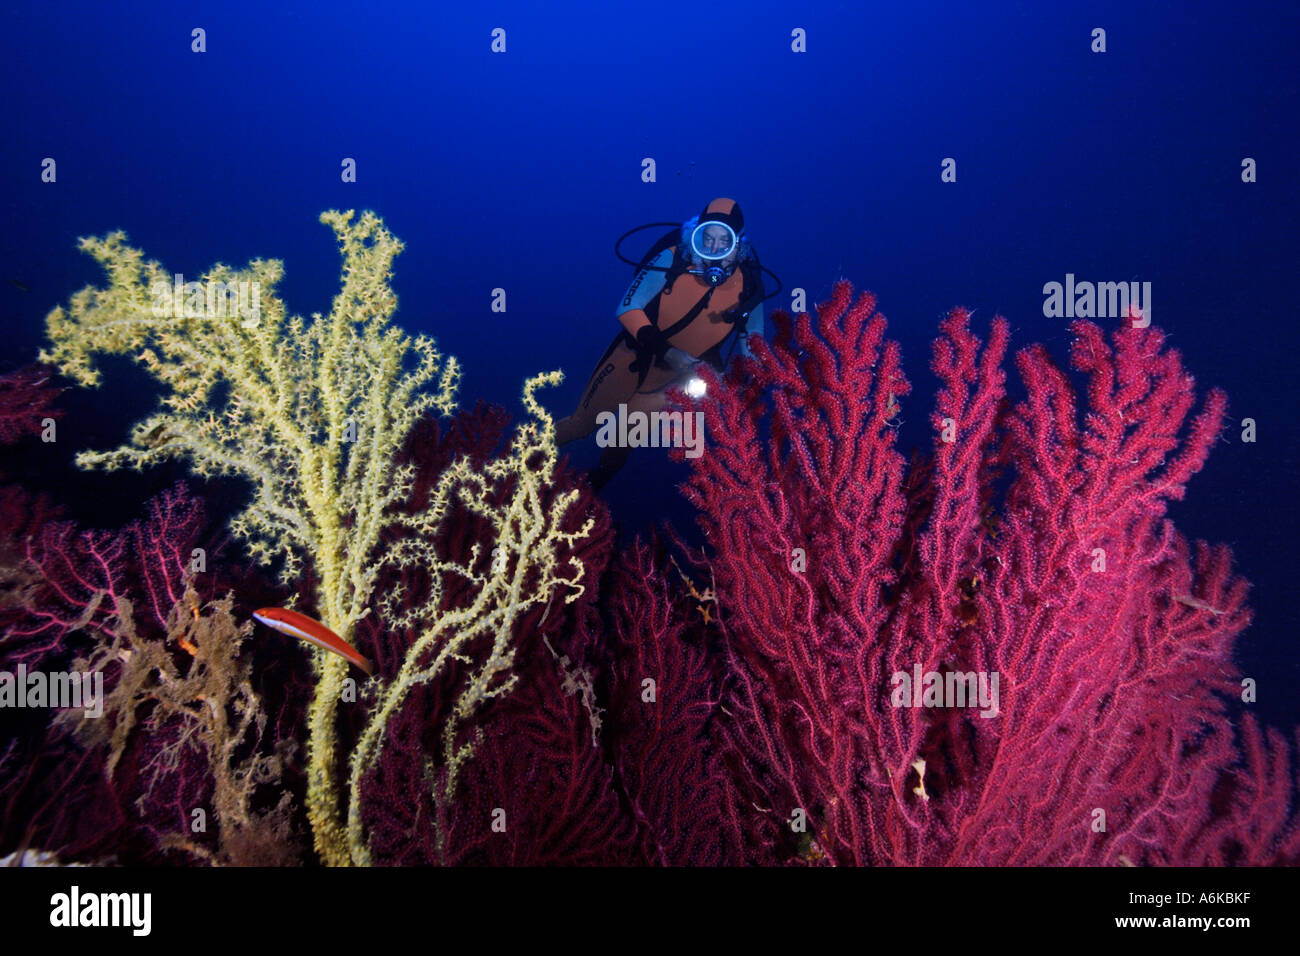 Taucher mit bunten Gorgonien im tiefblauen Wasser, Paramuricea Clavata und Gerardia savaglia Stockfoto